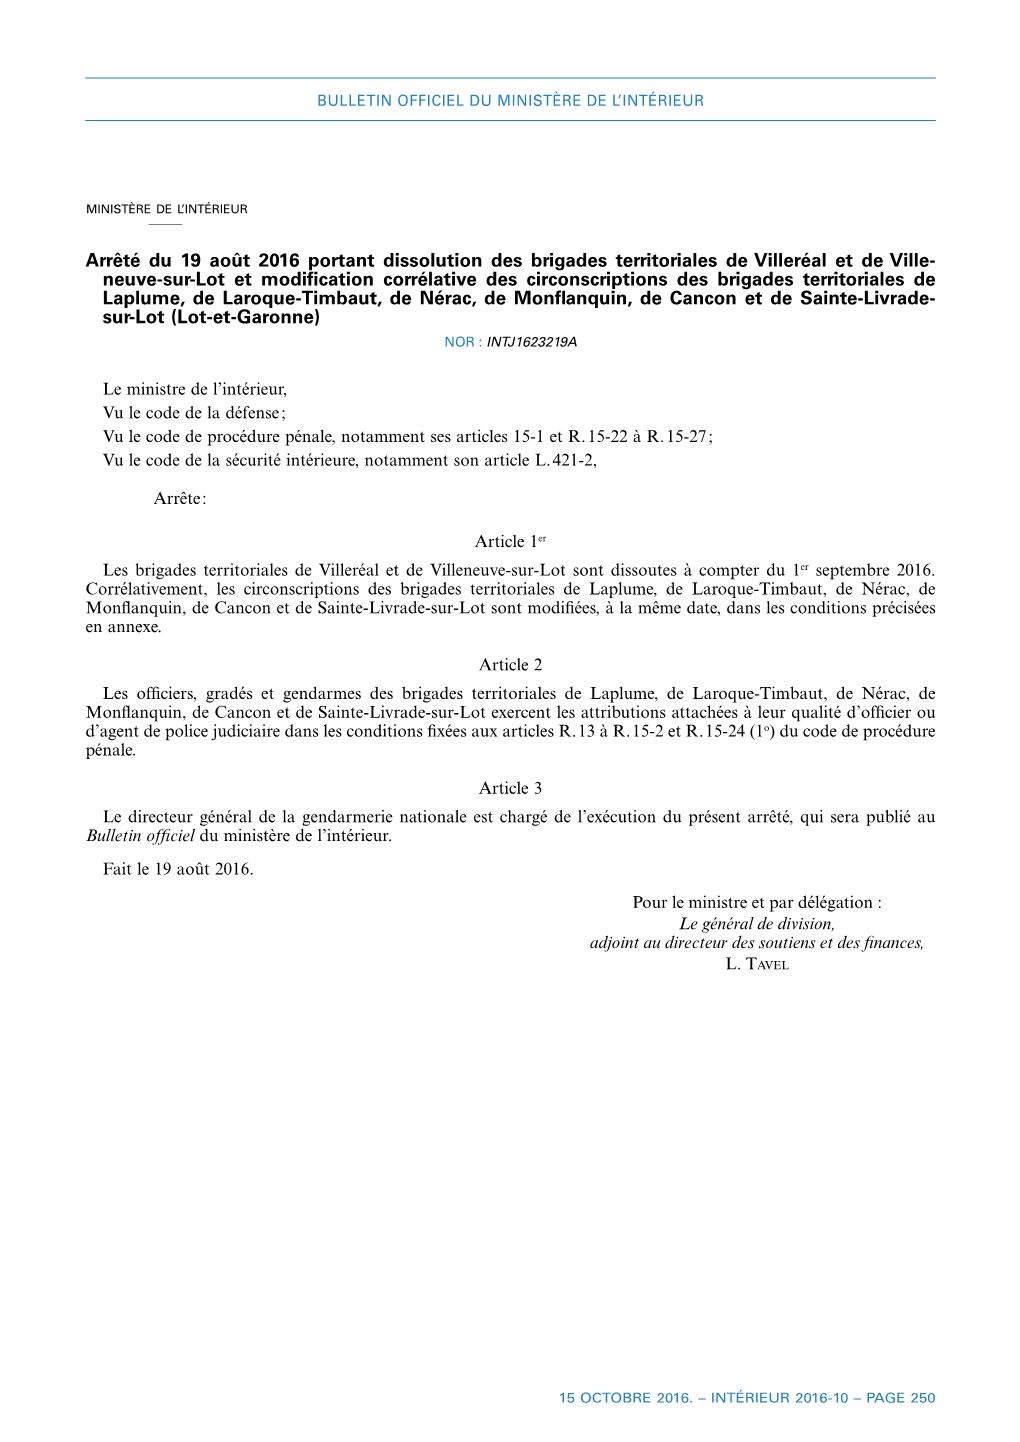 Arrêté Du 19 Août 2016 Portant Dissolution Des Brigades Territoriales De Villeréal Et De Ville- Neuve-Sur-Lot Et Modificat